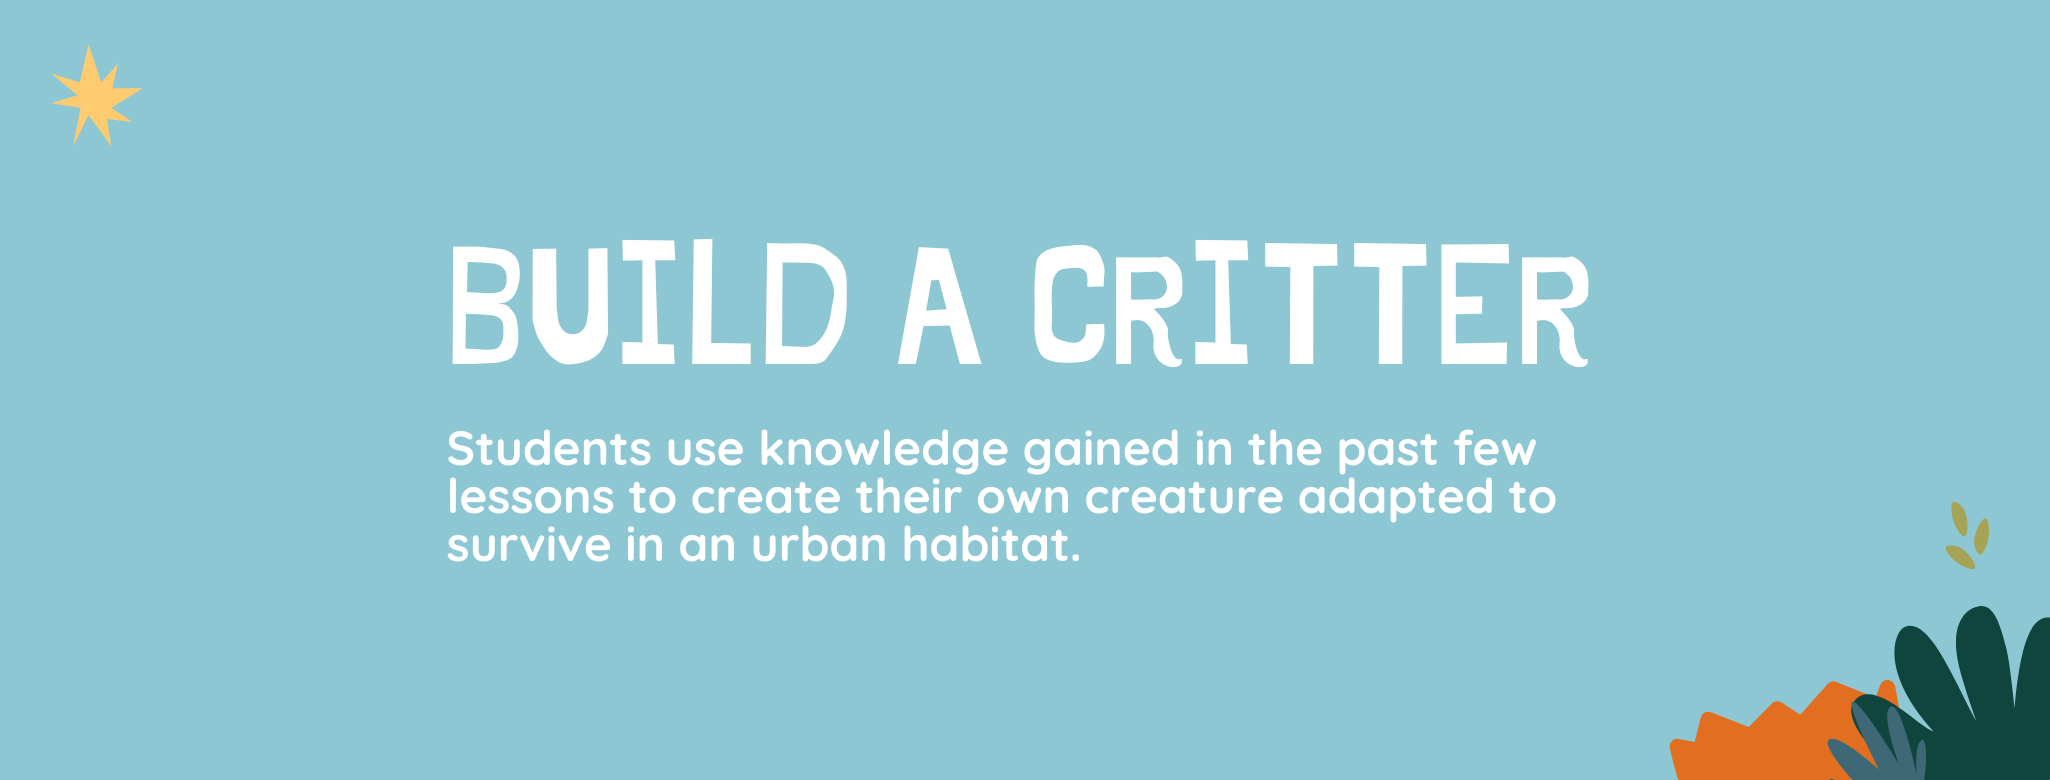 Build a Critter